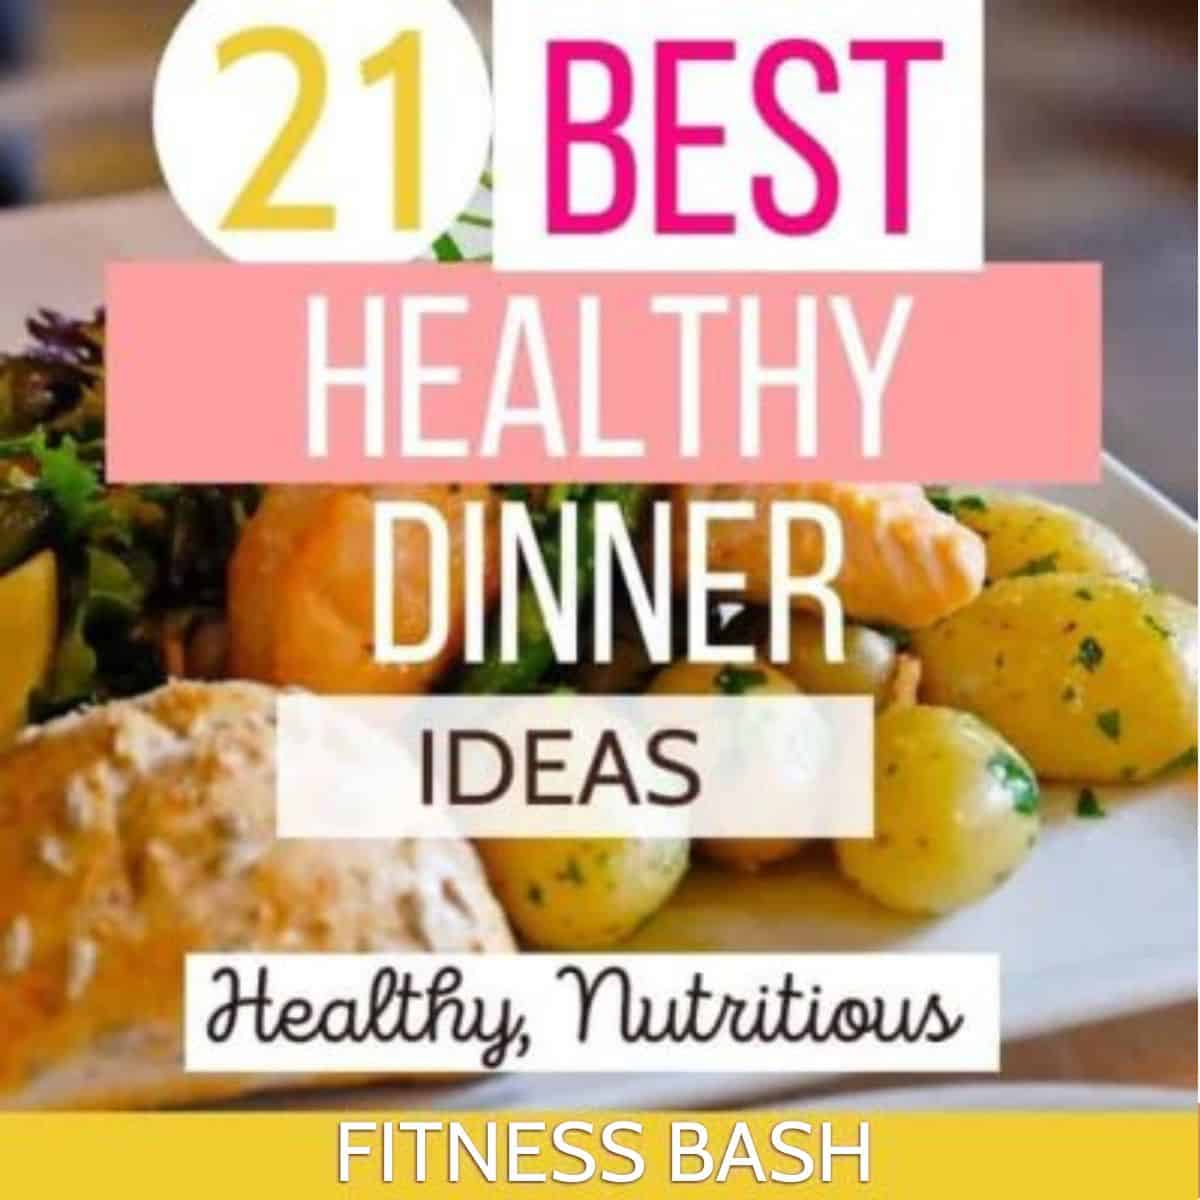 healthy dinner ideas